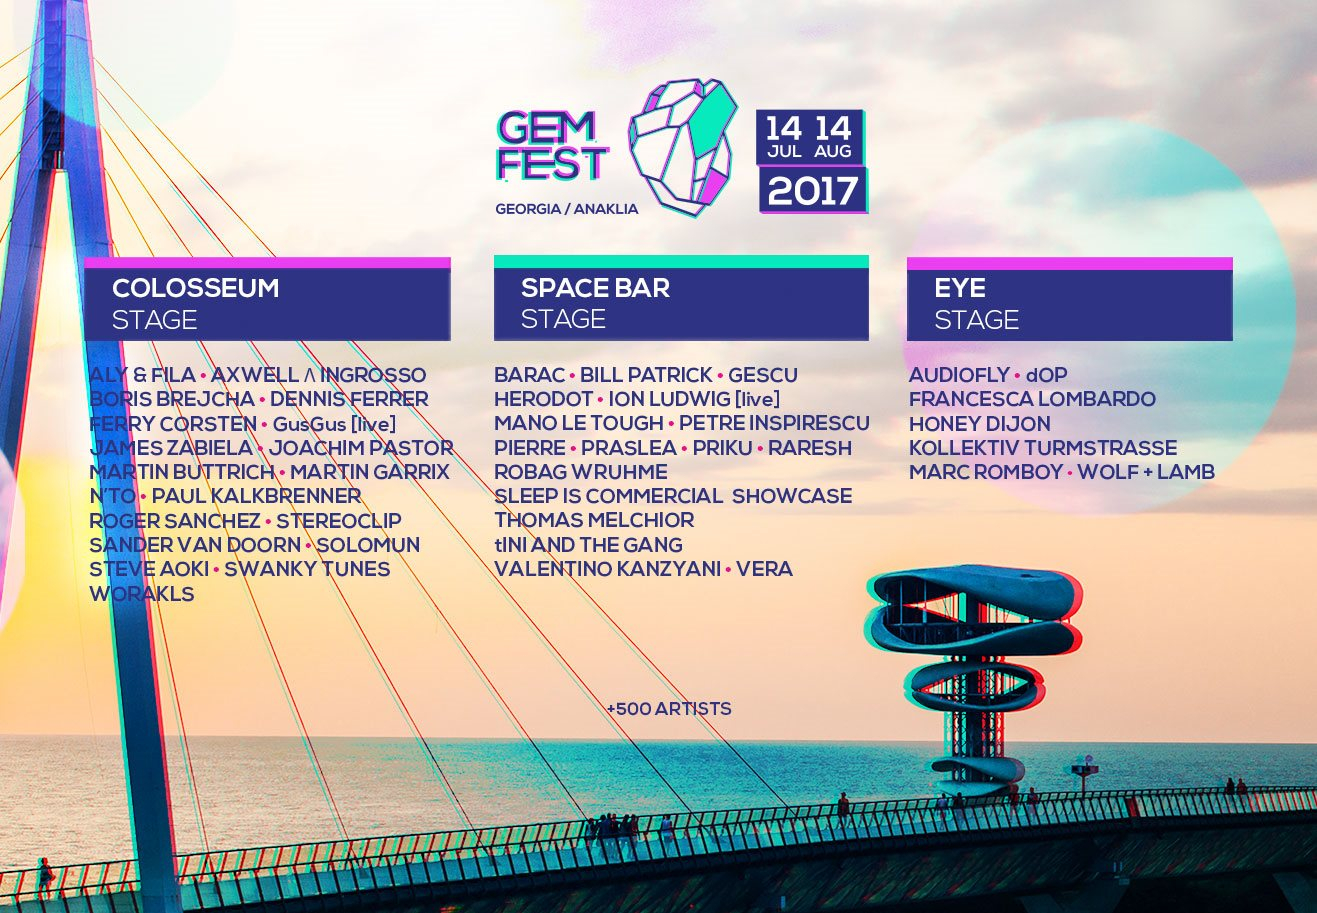 GEM Fest 2017 (July 14-August 14) - Flyer front